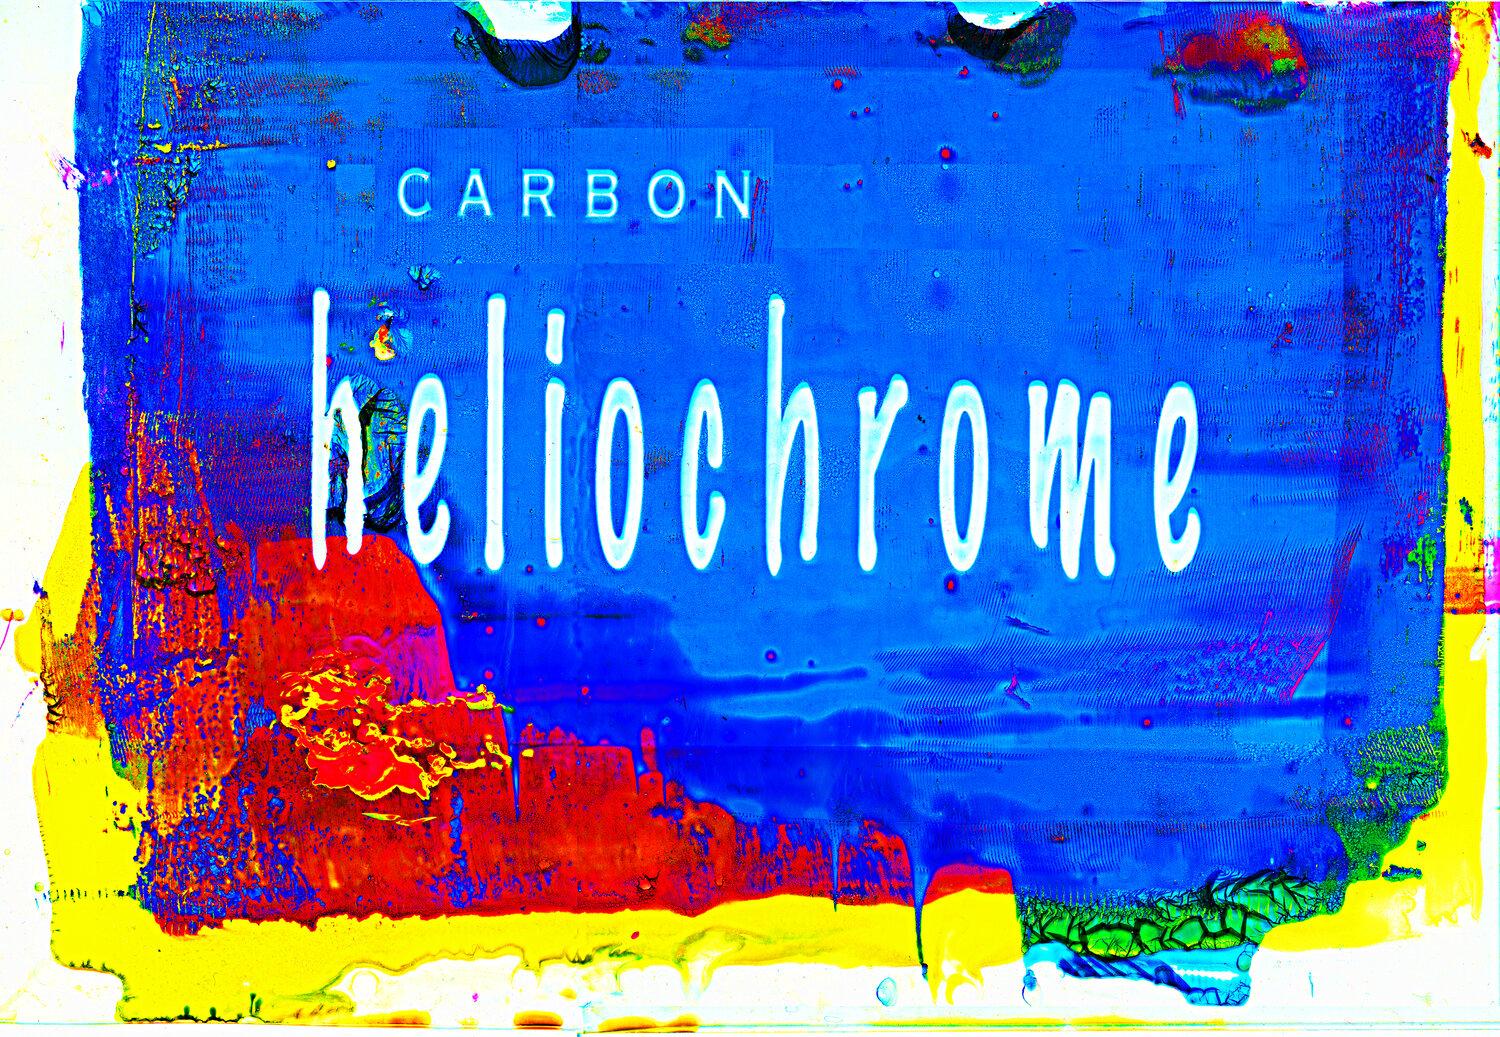 Carbon Heliochrome